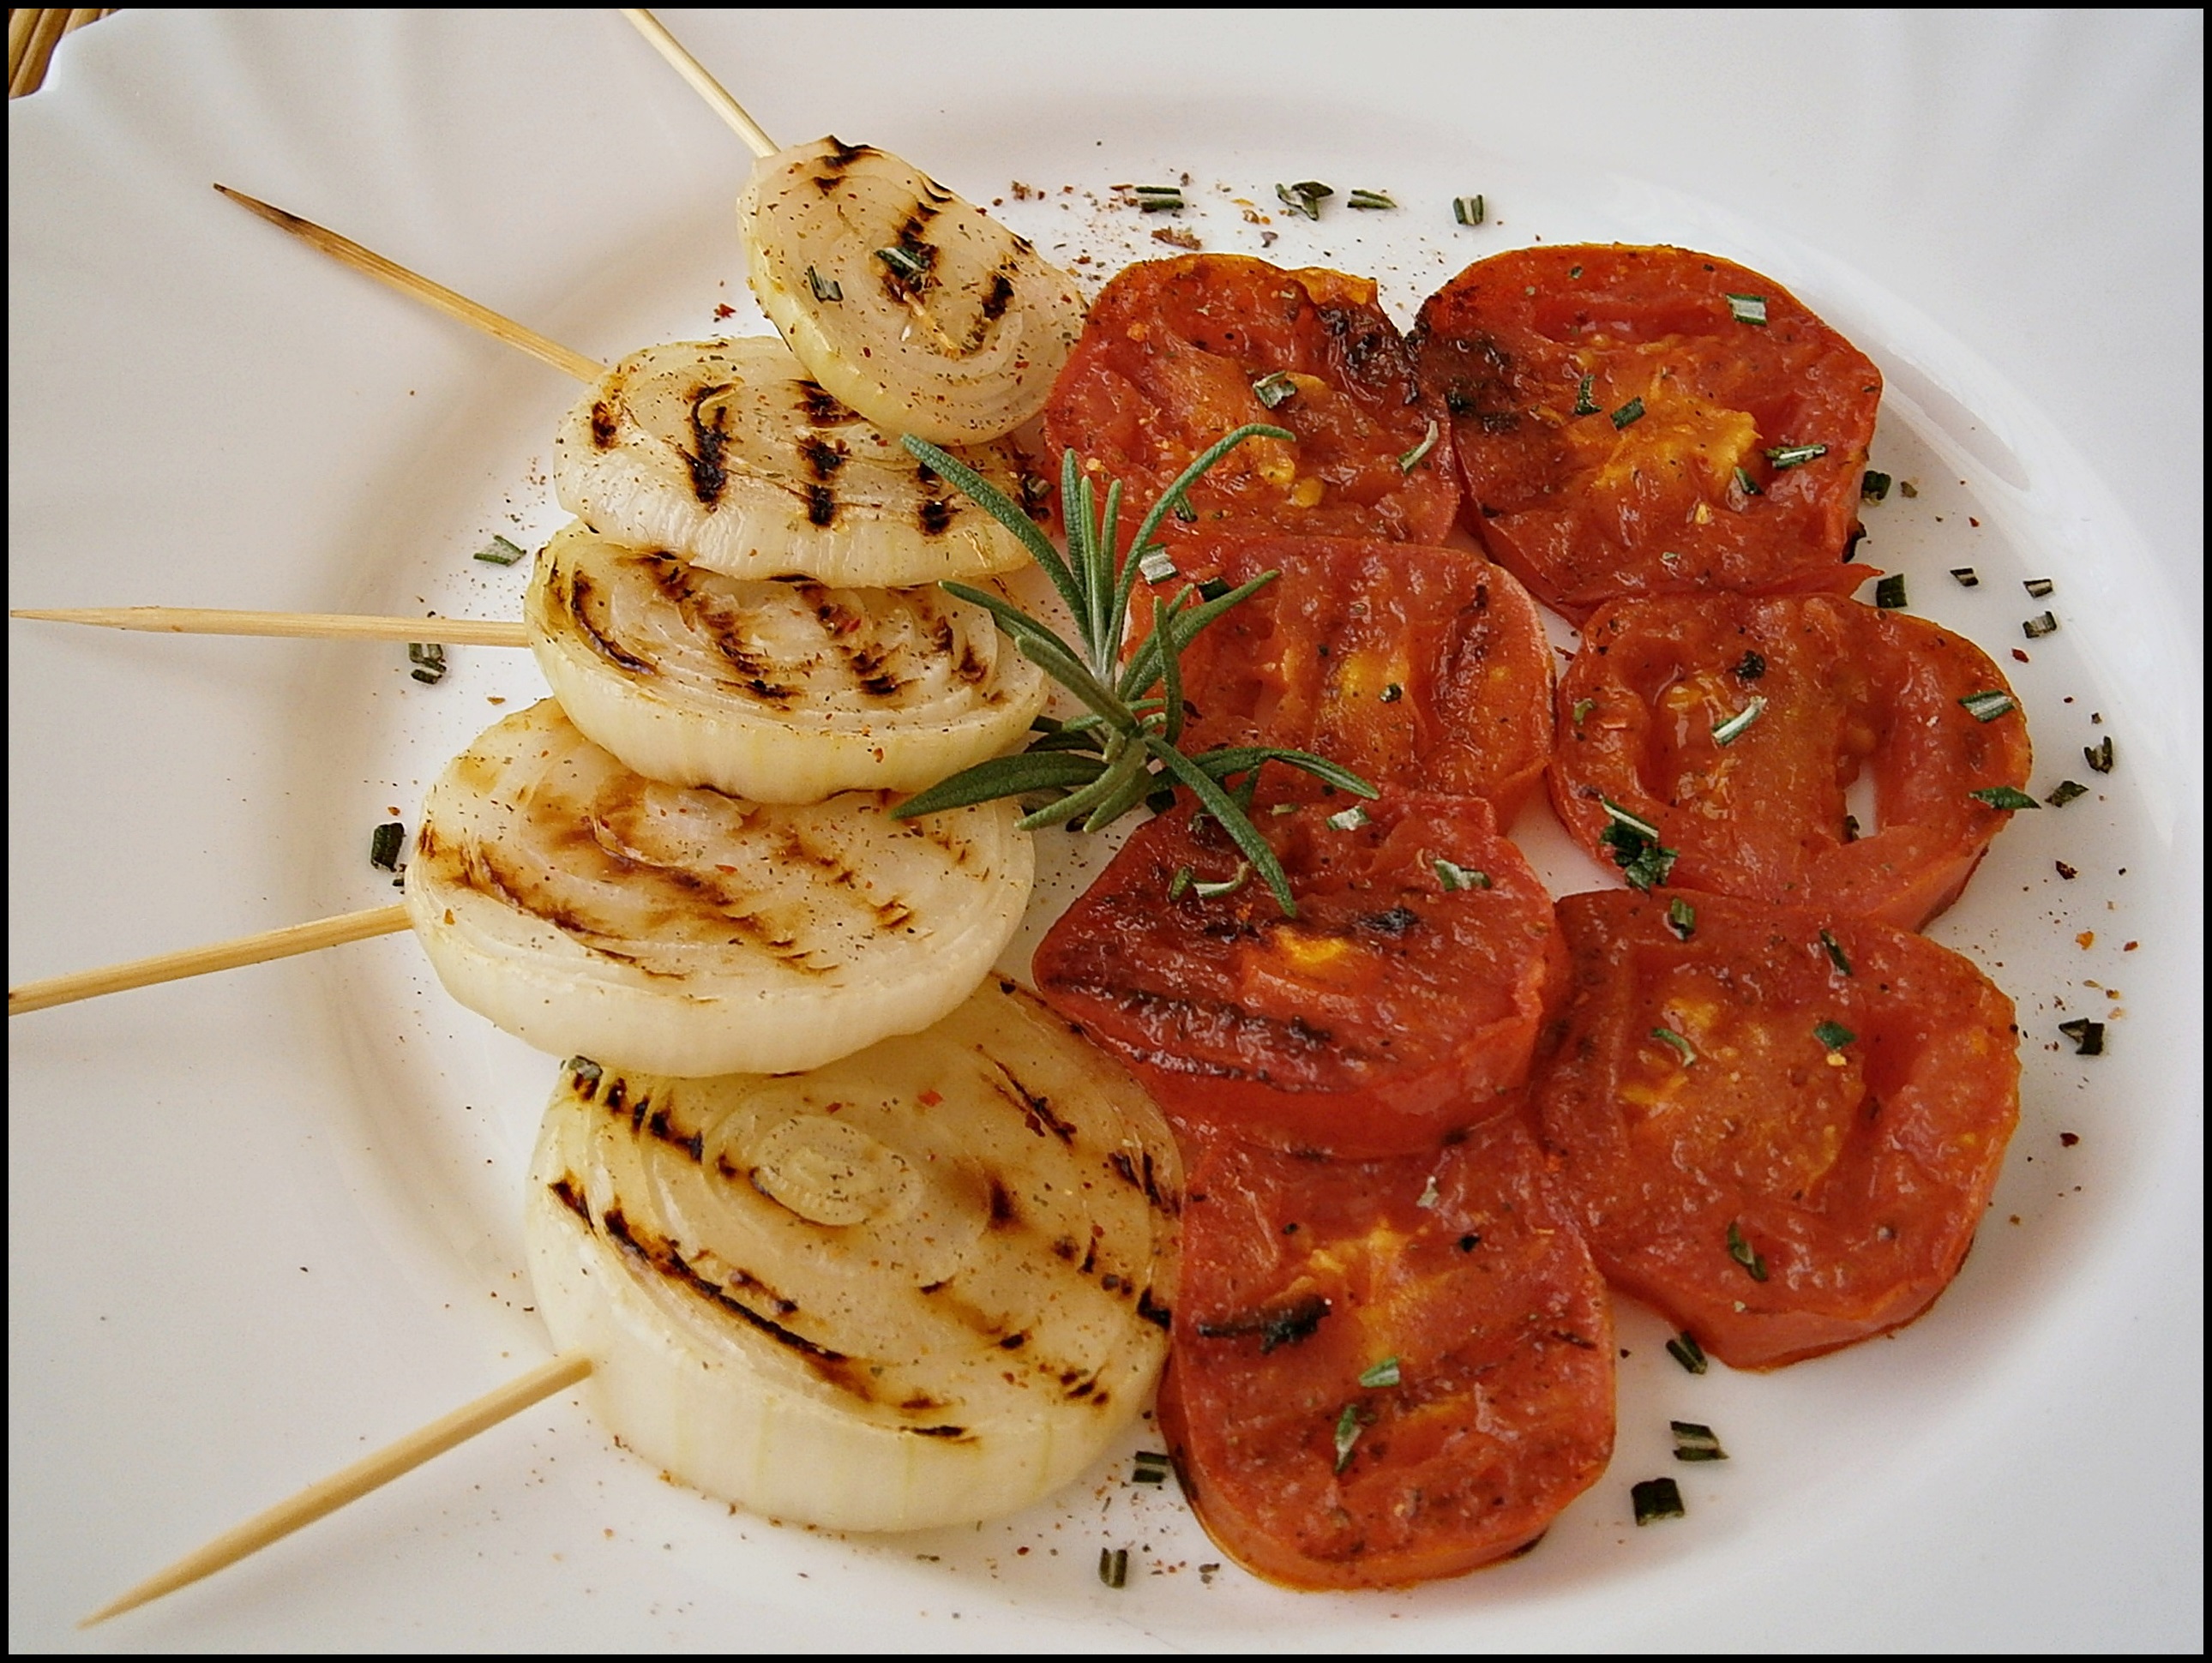 Cibule s rajčaty na grilu, s česnekovo-rozmarýnovým nádechem